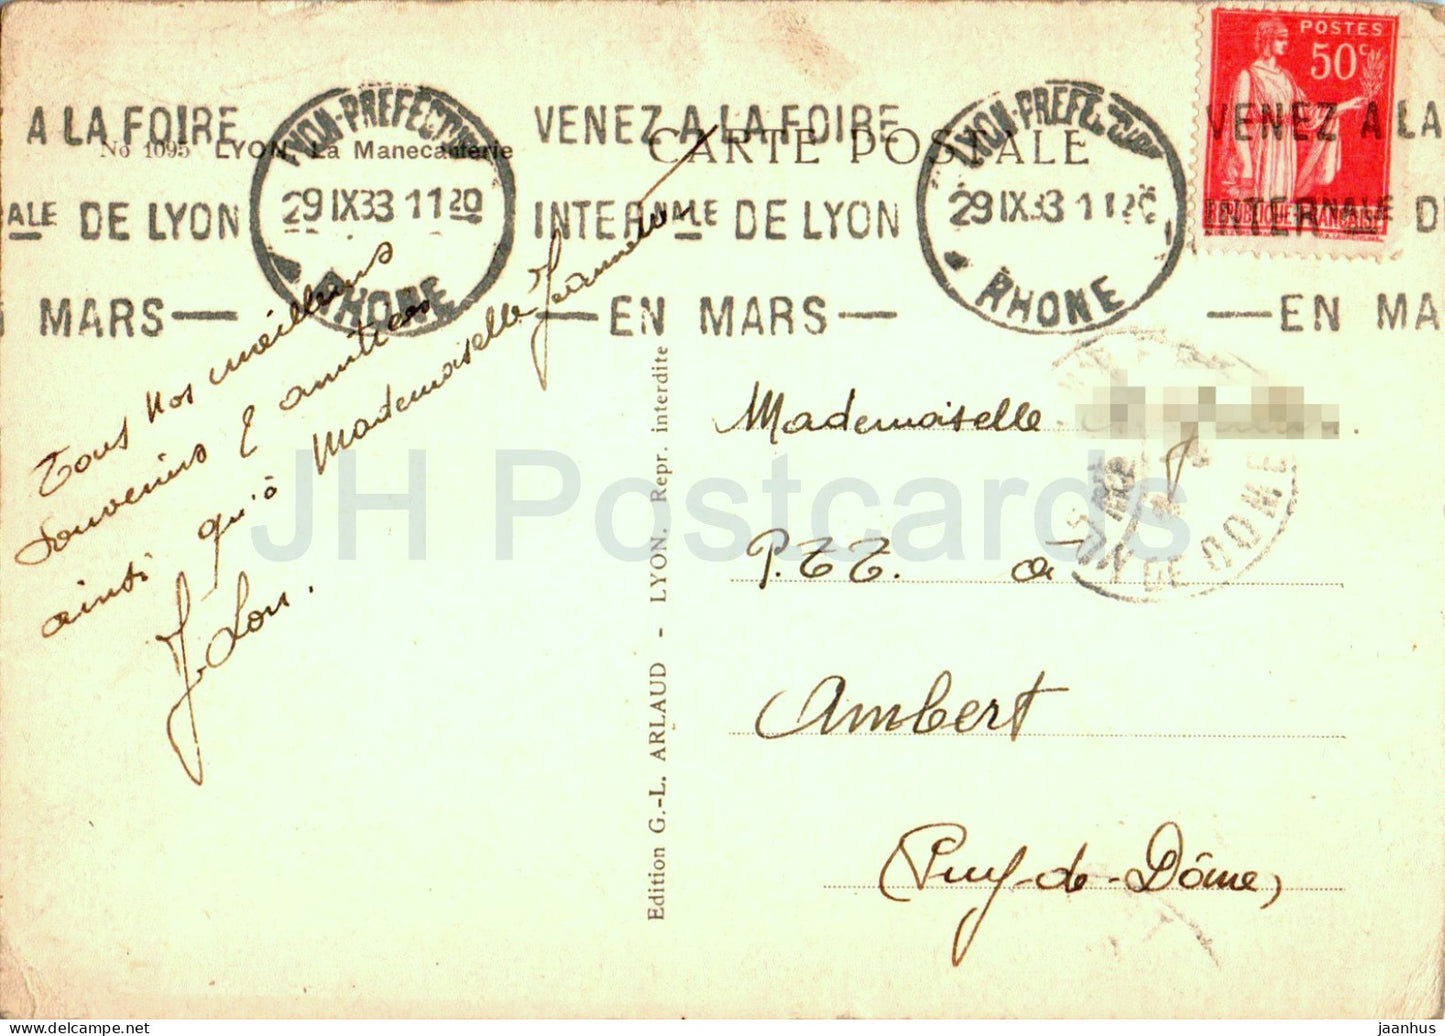 Lyon - La Manecanterie - 1095 - carte postale ancienne - 1933 - France - occasion 